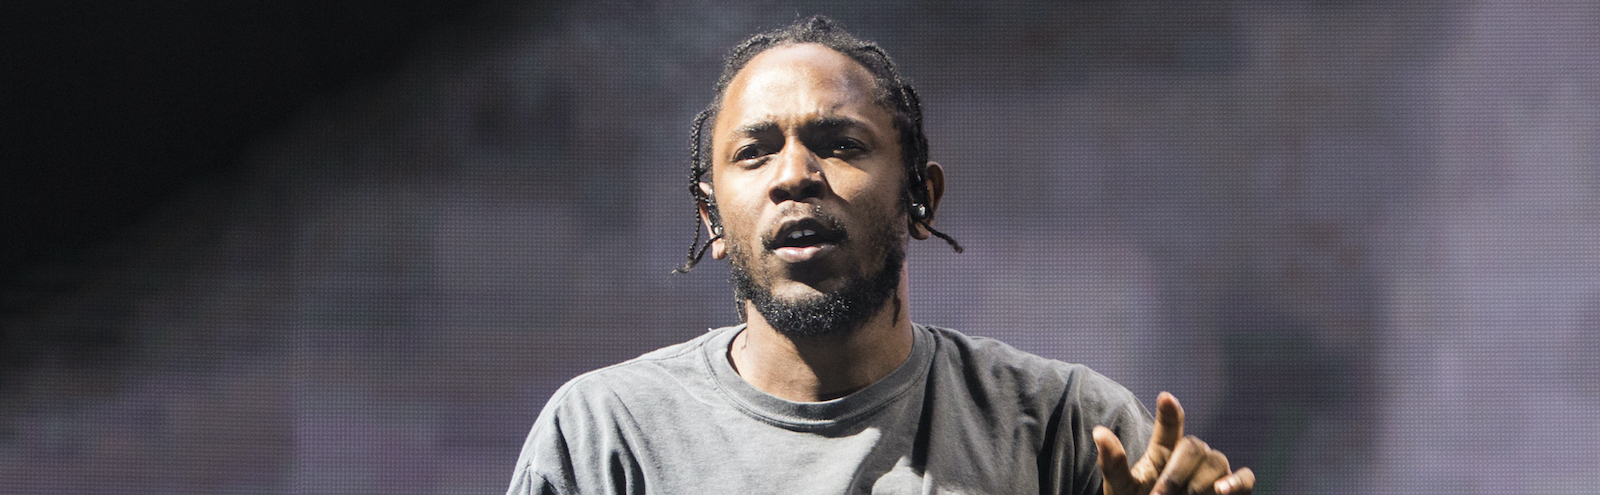 Kendrick Lamar Oslo Program